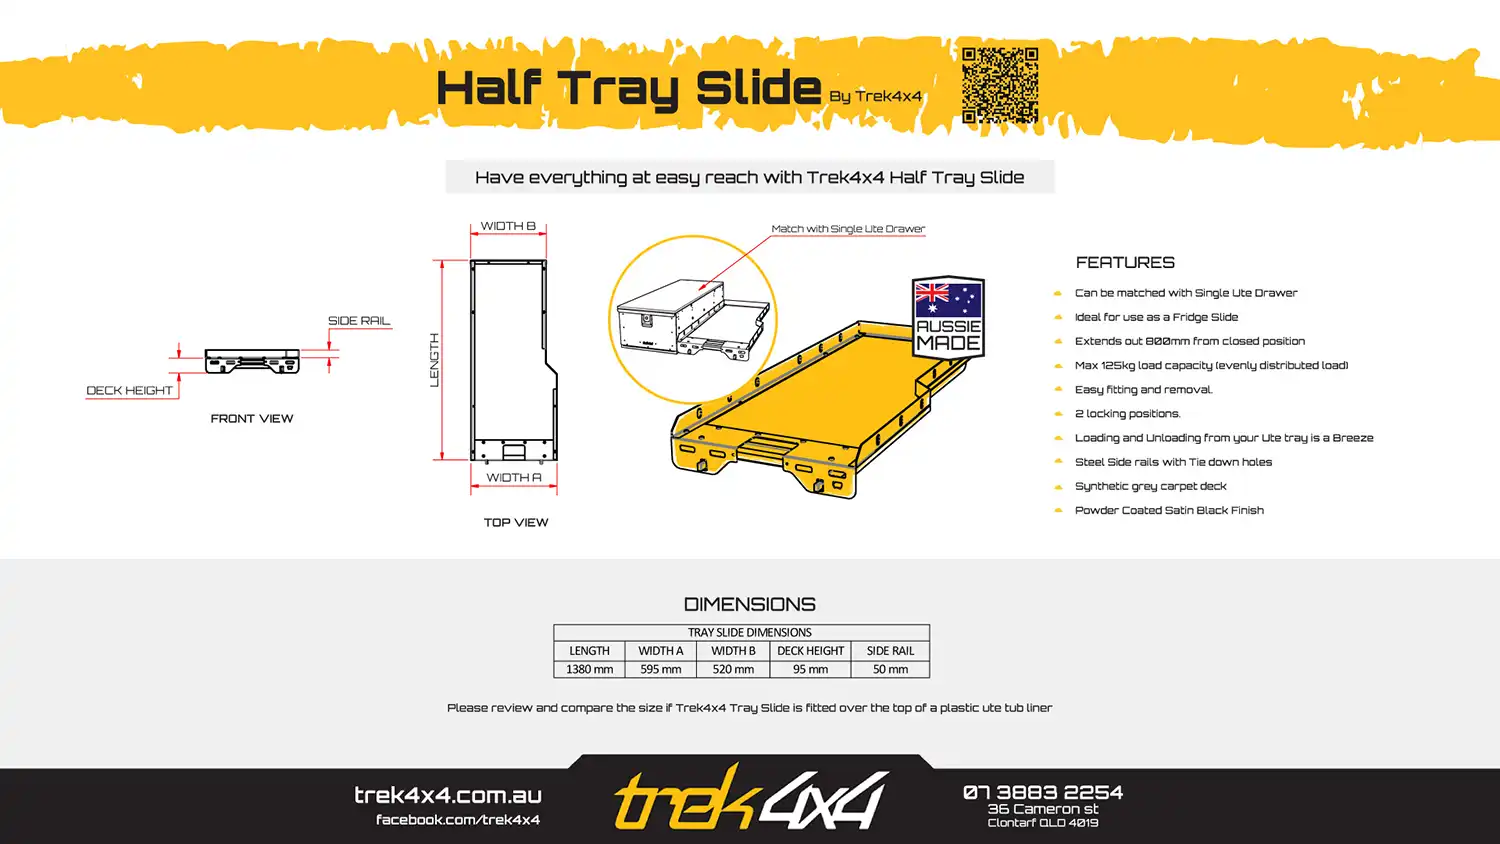 Half-Slide-Trek4x4 - brochure